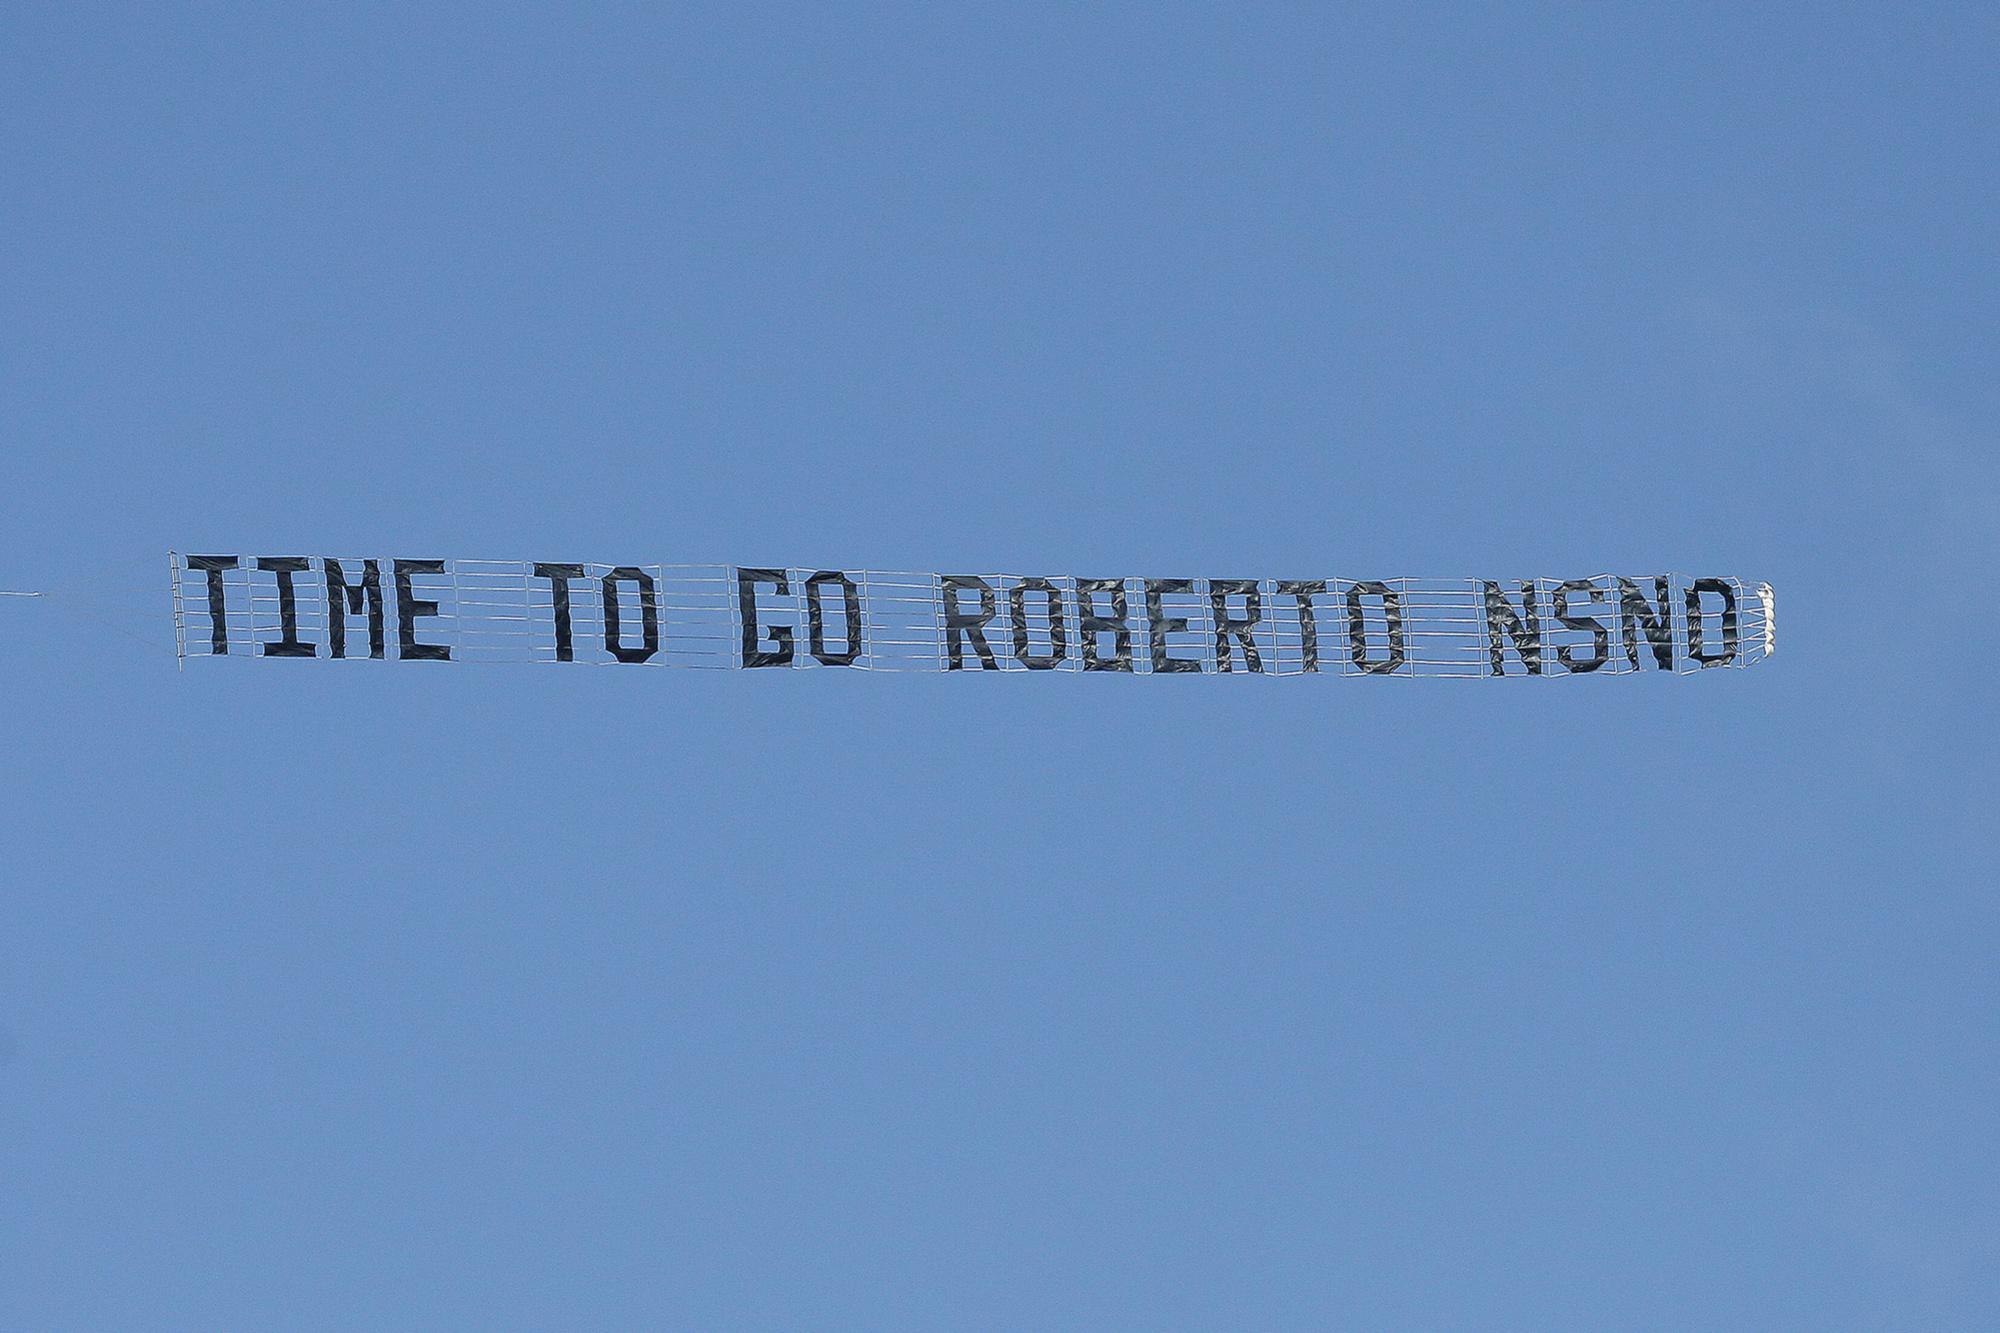 Les fans d'Everton ont même été jusqu'à utiliser un avion pour demander à Roberto Martinez de s'en aller de leur club.